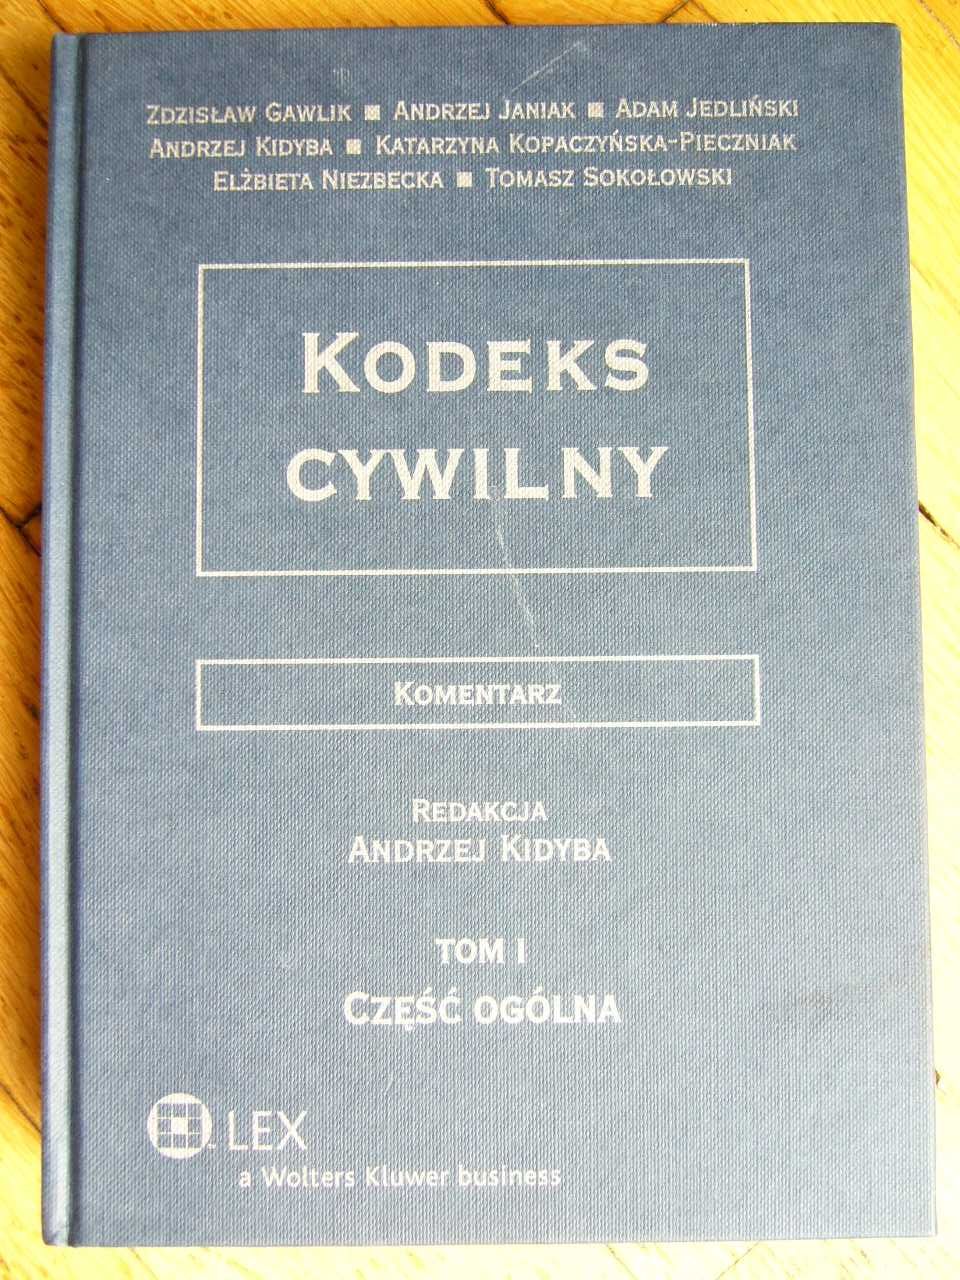 Kodeks cywilny, komentarz, redakcja Andrzej Kidyba, 4 tomy